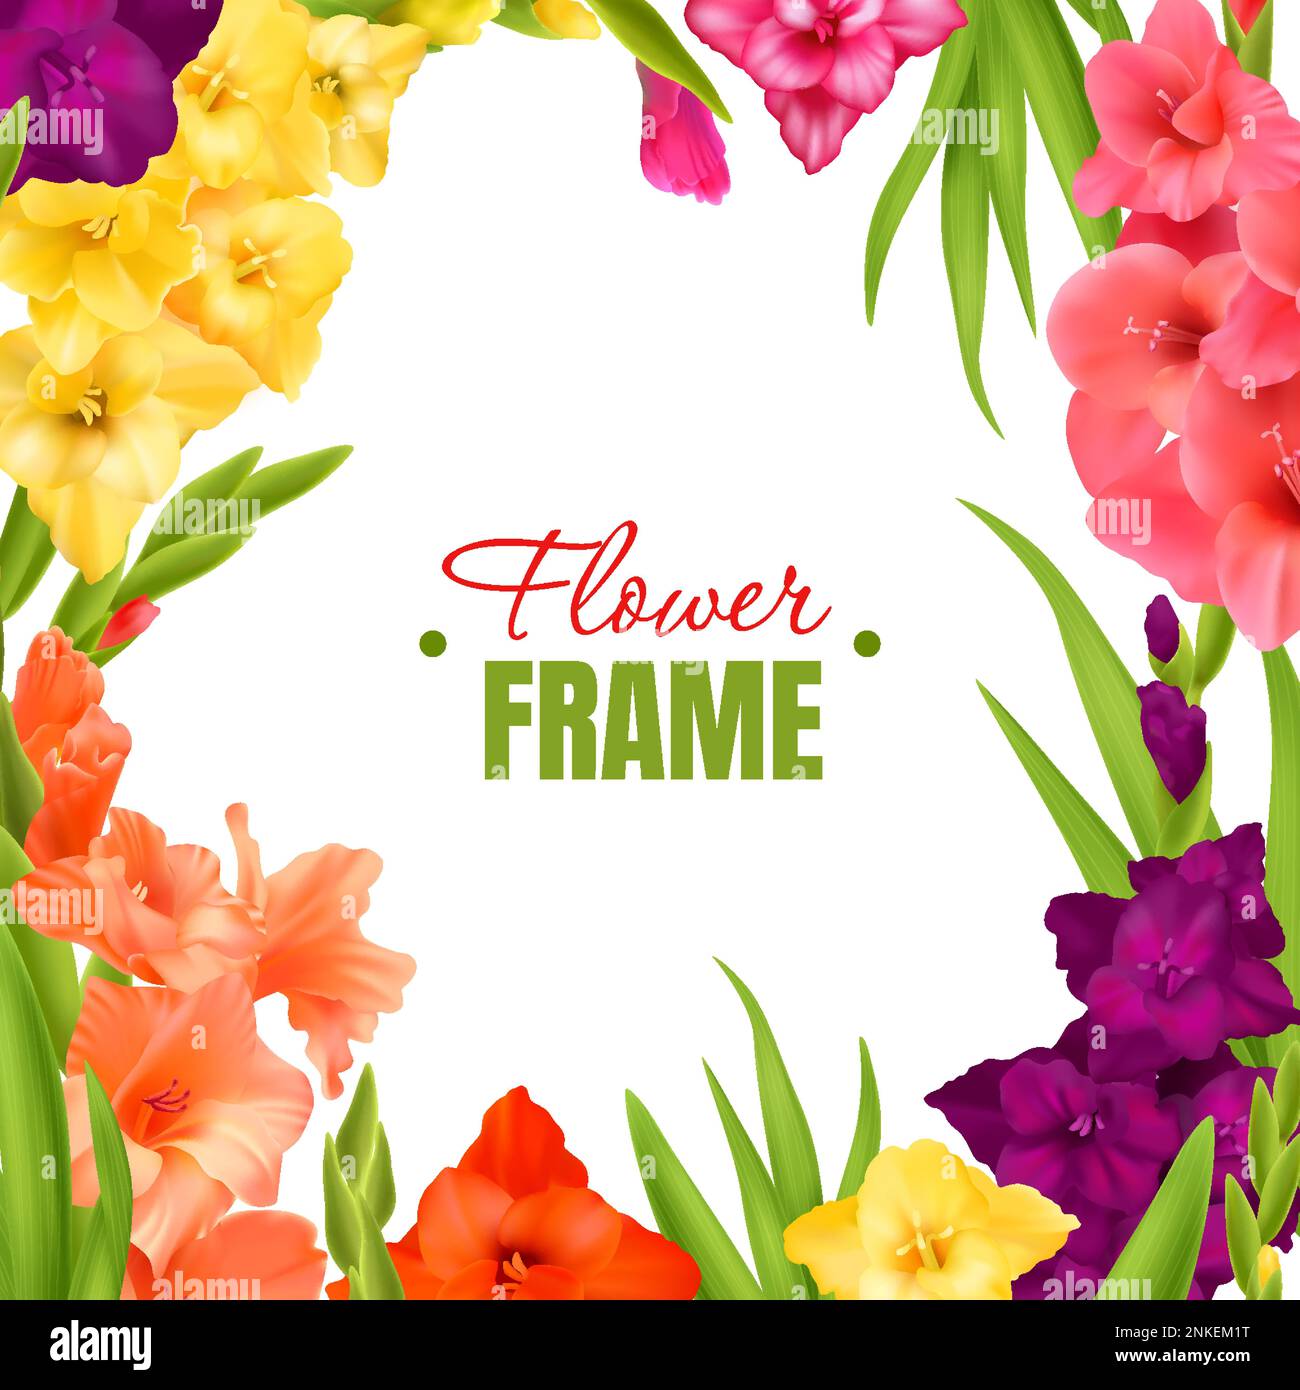 Cadre gladiolus réaliste avec fleurs fleuries de différentes couleurs et illustration vectorielle de feuilles vertes Illustration de Vecteur